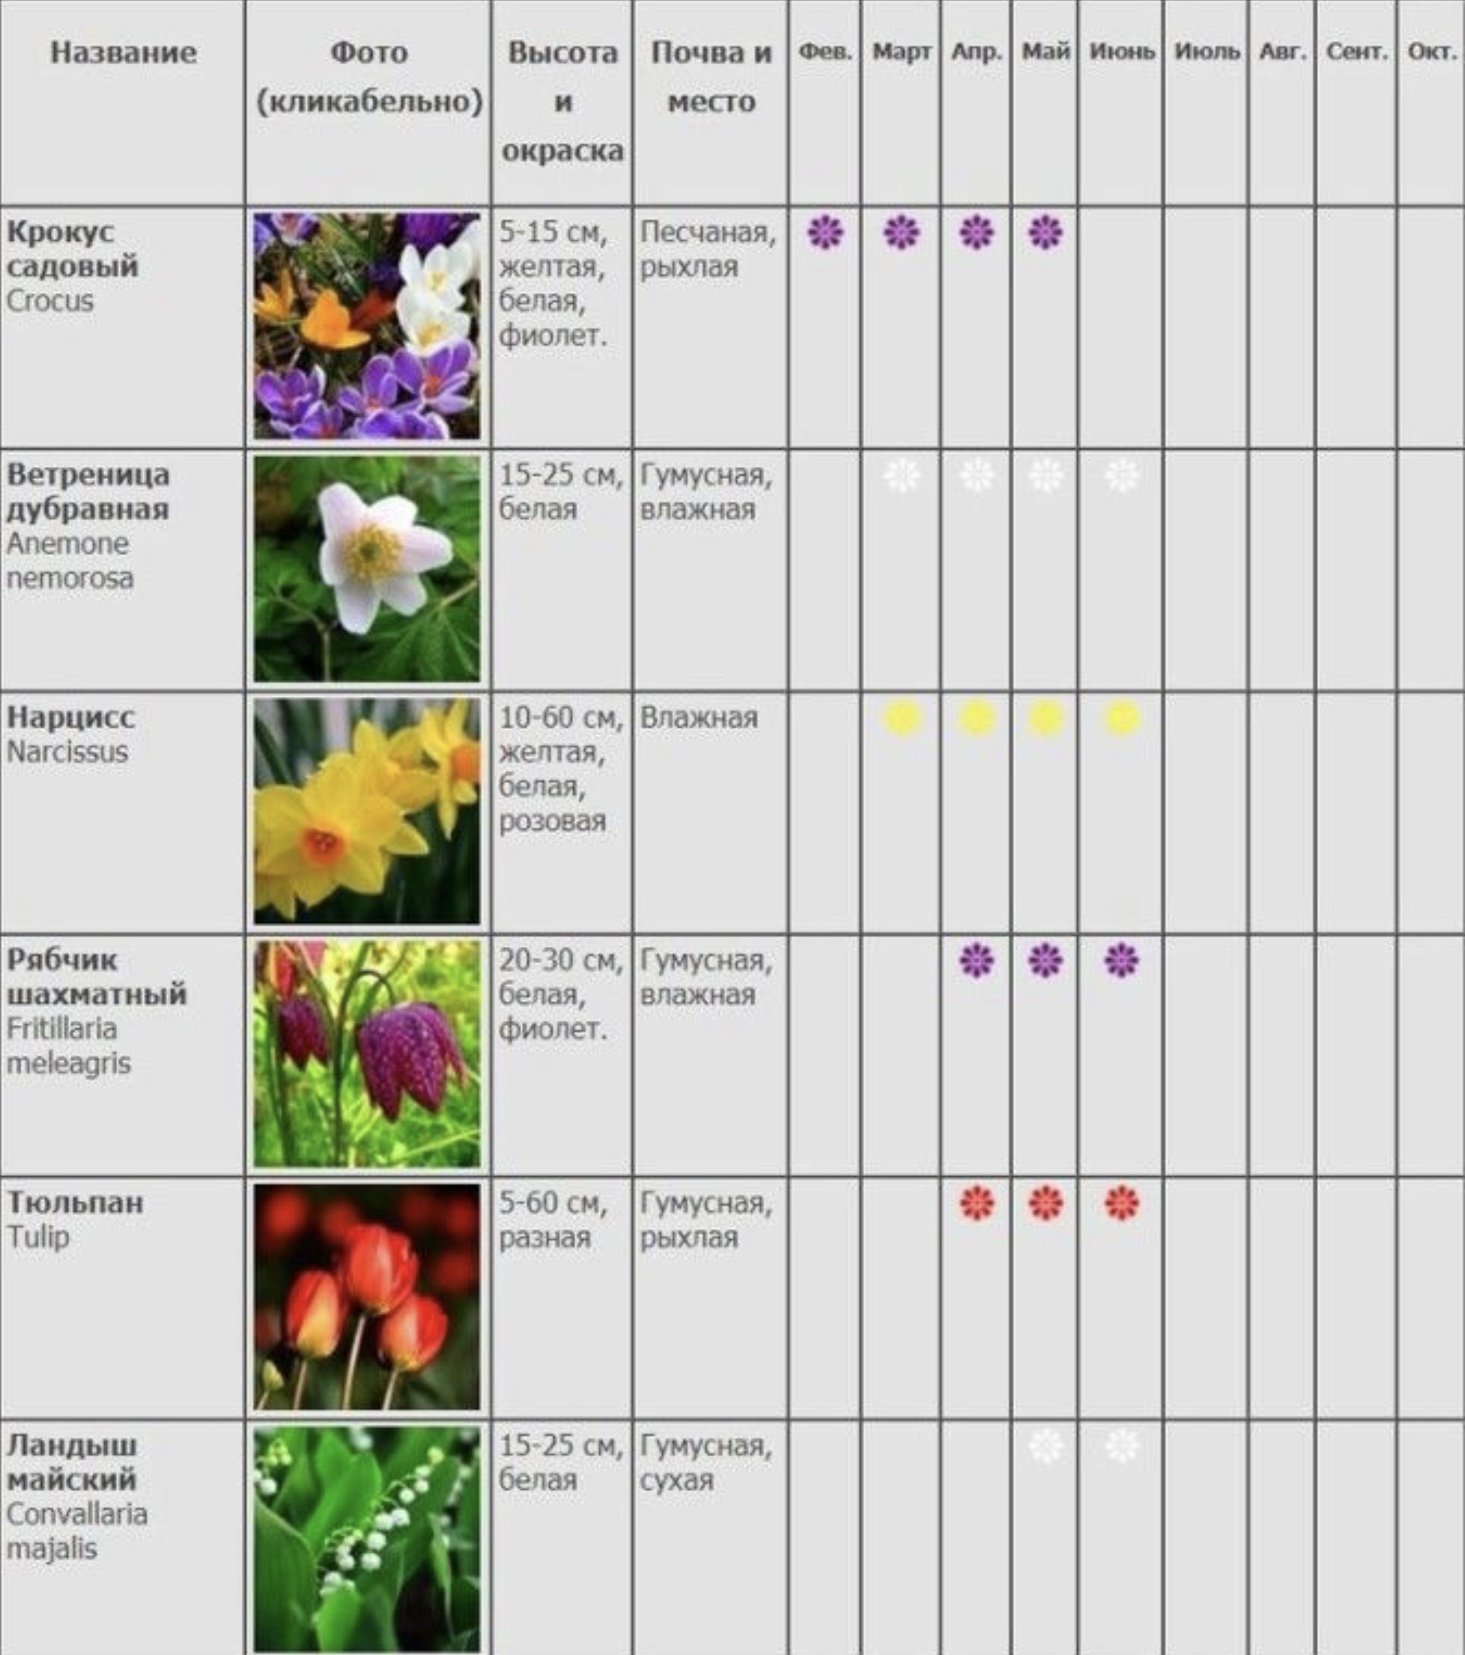 Когда в марте можно сажать рассаду цветов. Сроки цветения лилейников таблица. Таблица сроков цветения многолетников. Сроки цветения многолетников. Сроки цветения многолетников для клумб таблица.